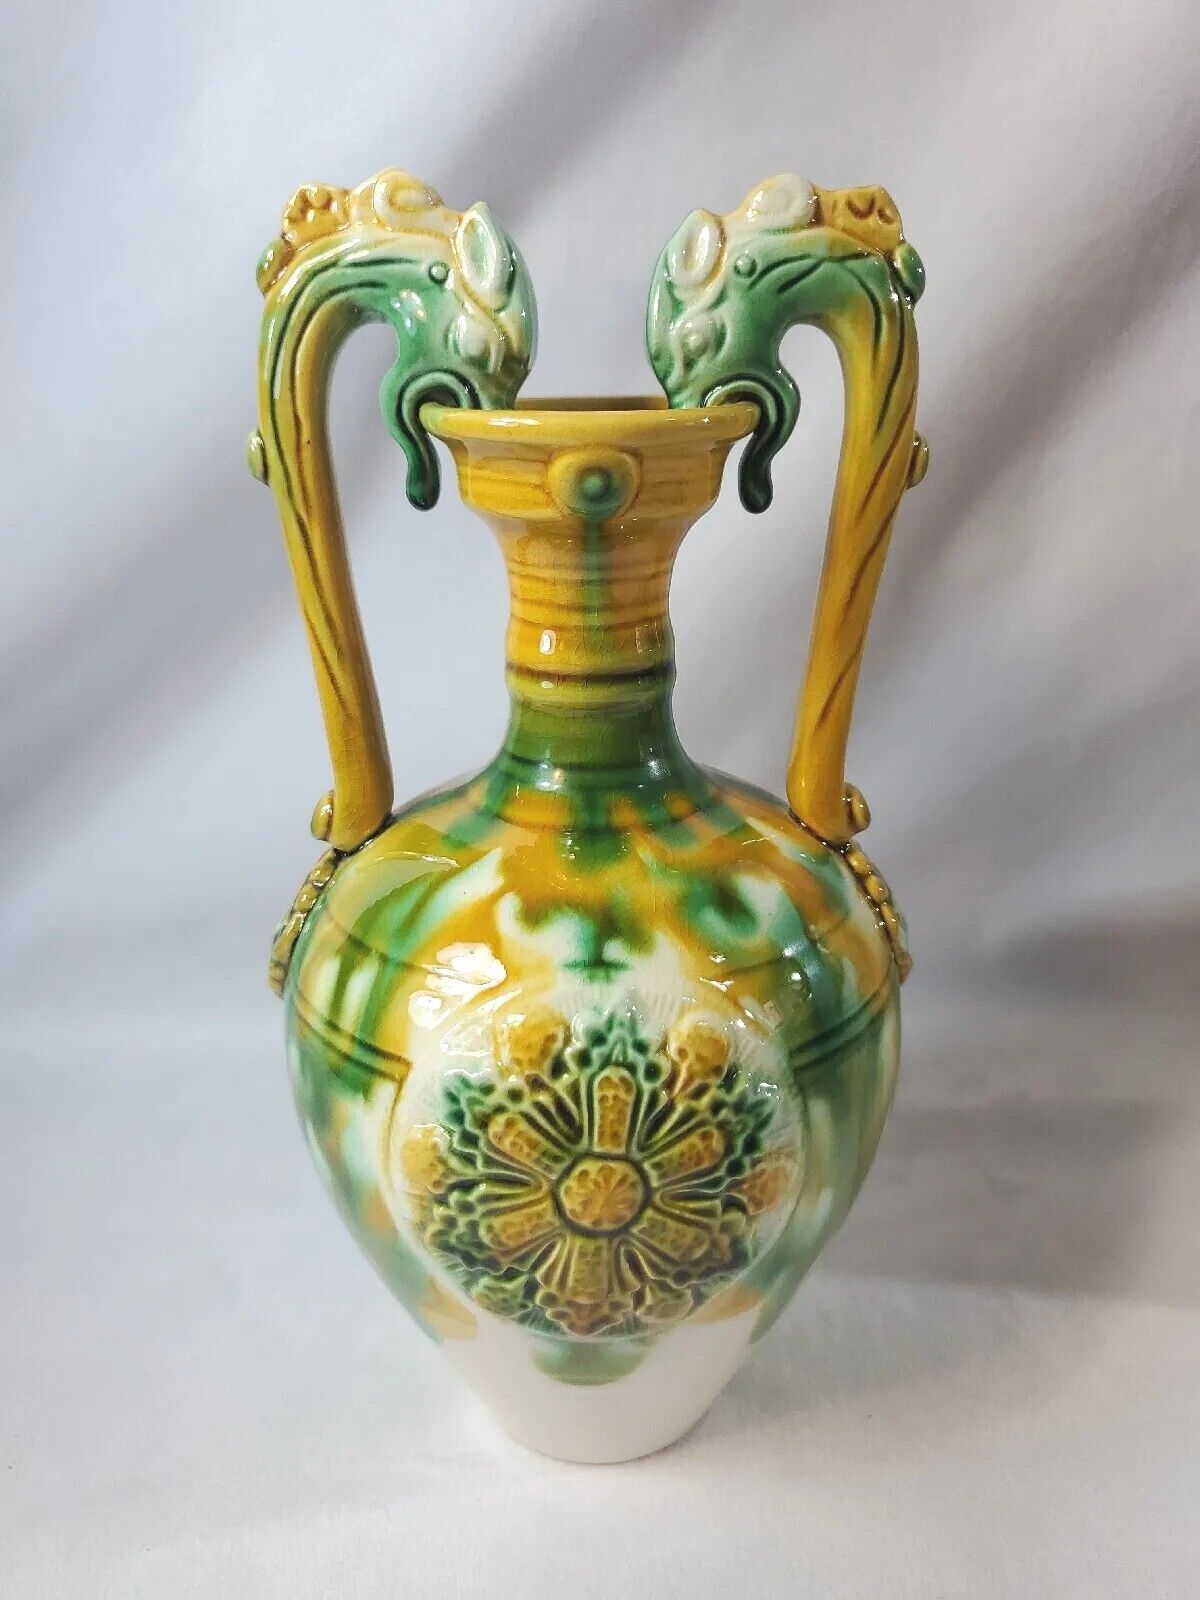 DRAGON HANDLED PORCELAIN VASE Art Pottery 2 Dragons Adorn This FANTASTICAL Vase